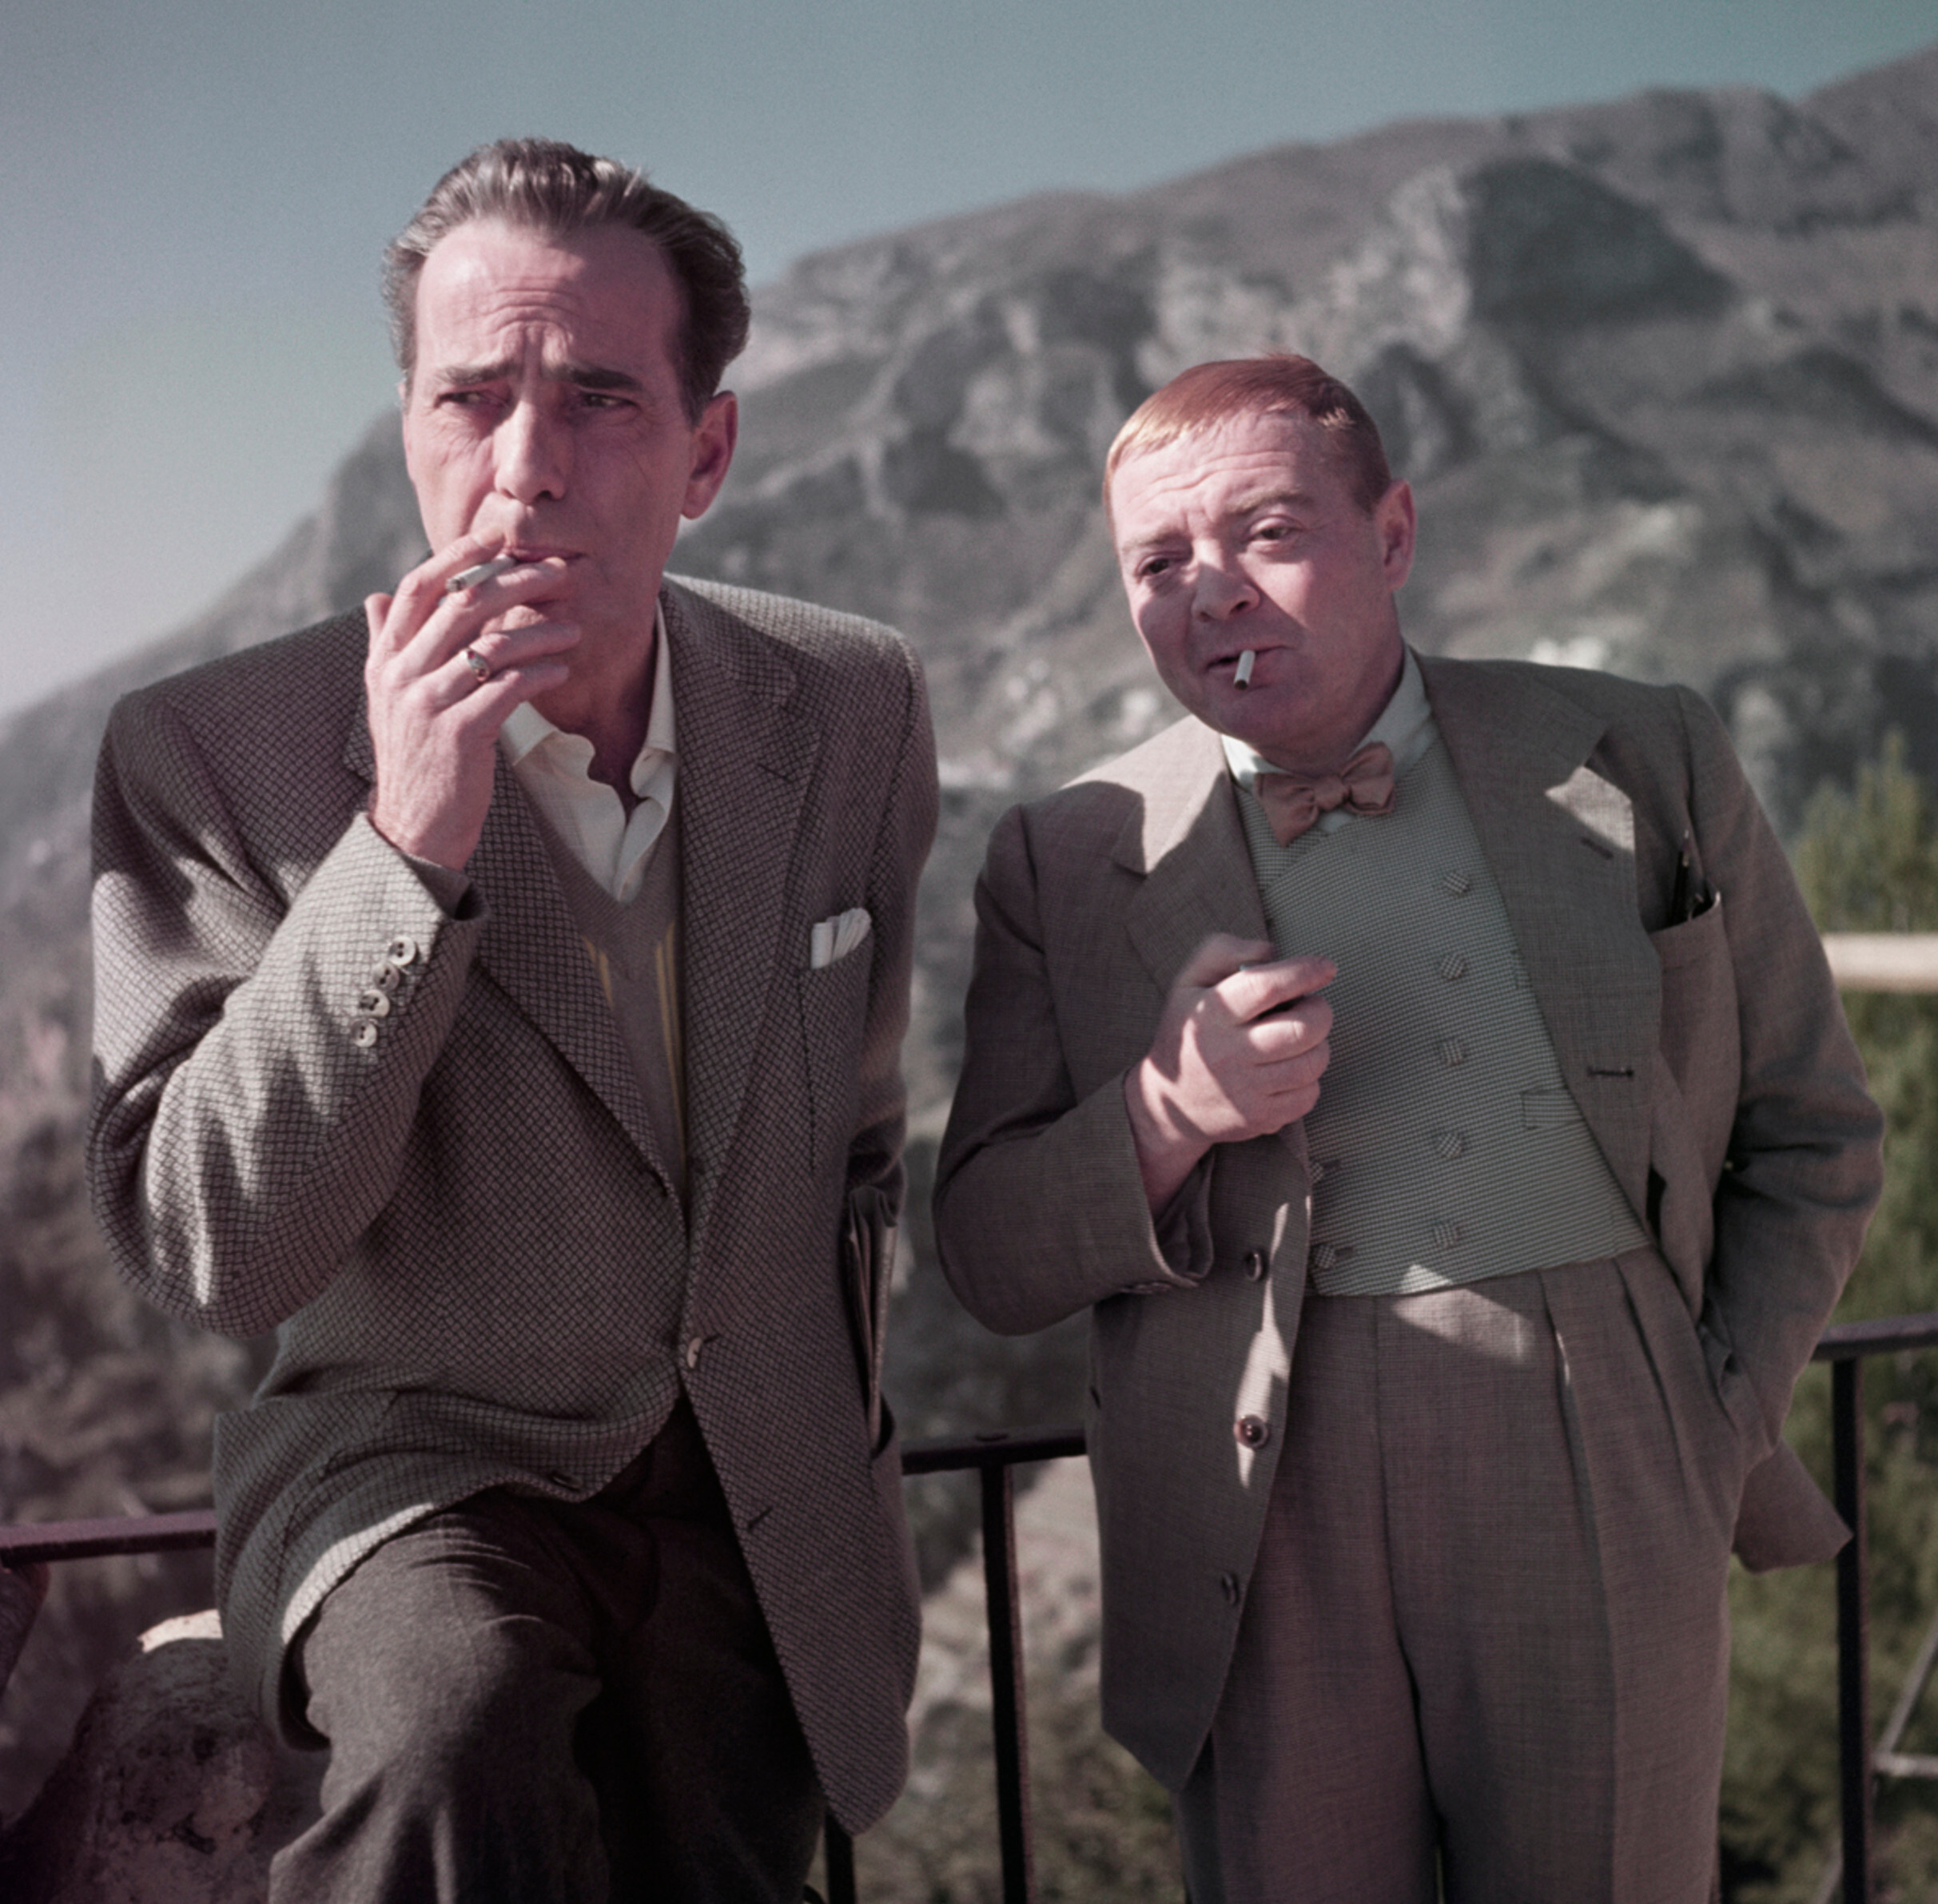 Хамфри Богарт и Питер Лорре на съемках фильма Бей дьявола, Равелло, Италия, Апрель 1953 года. Фотограф Роберт Капа